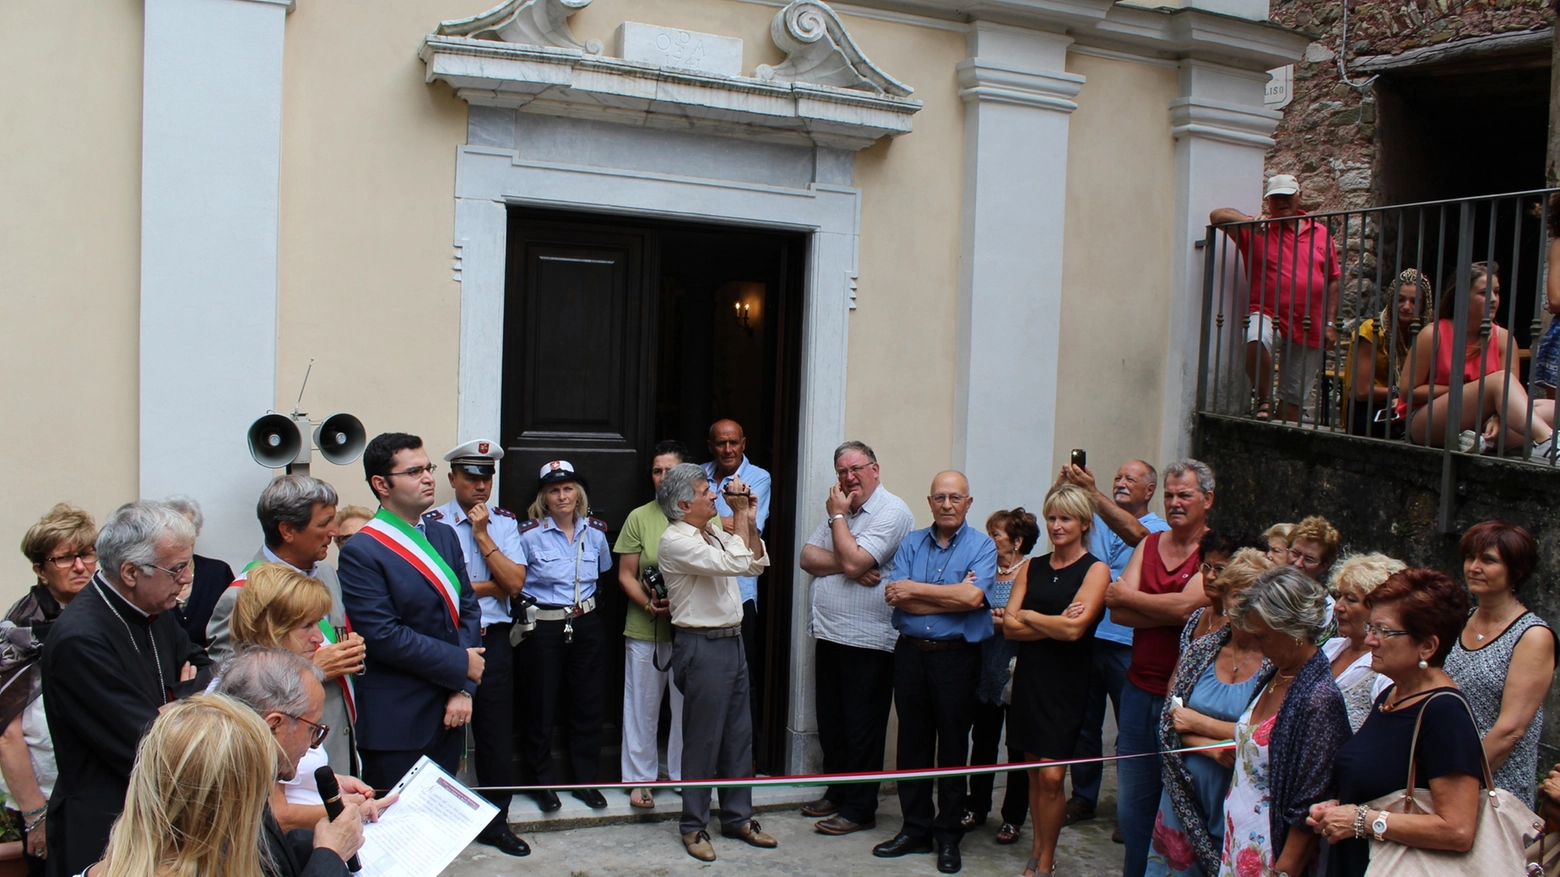 La chiesa a Noceto viene inaugurata dal sindaco Angelo Zubbani